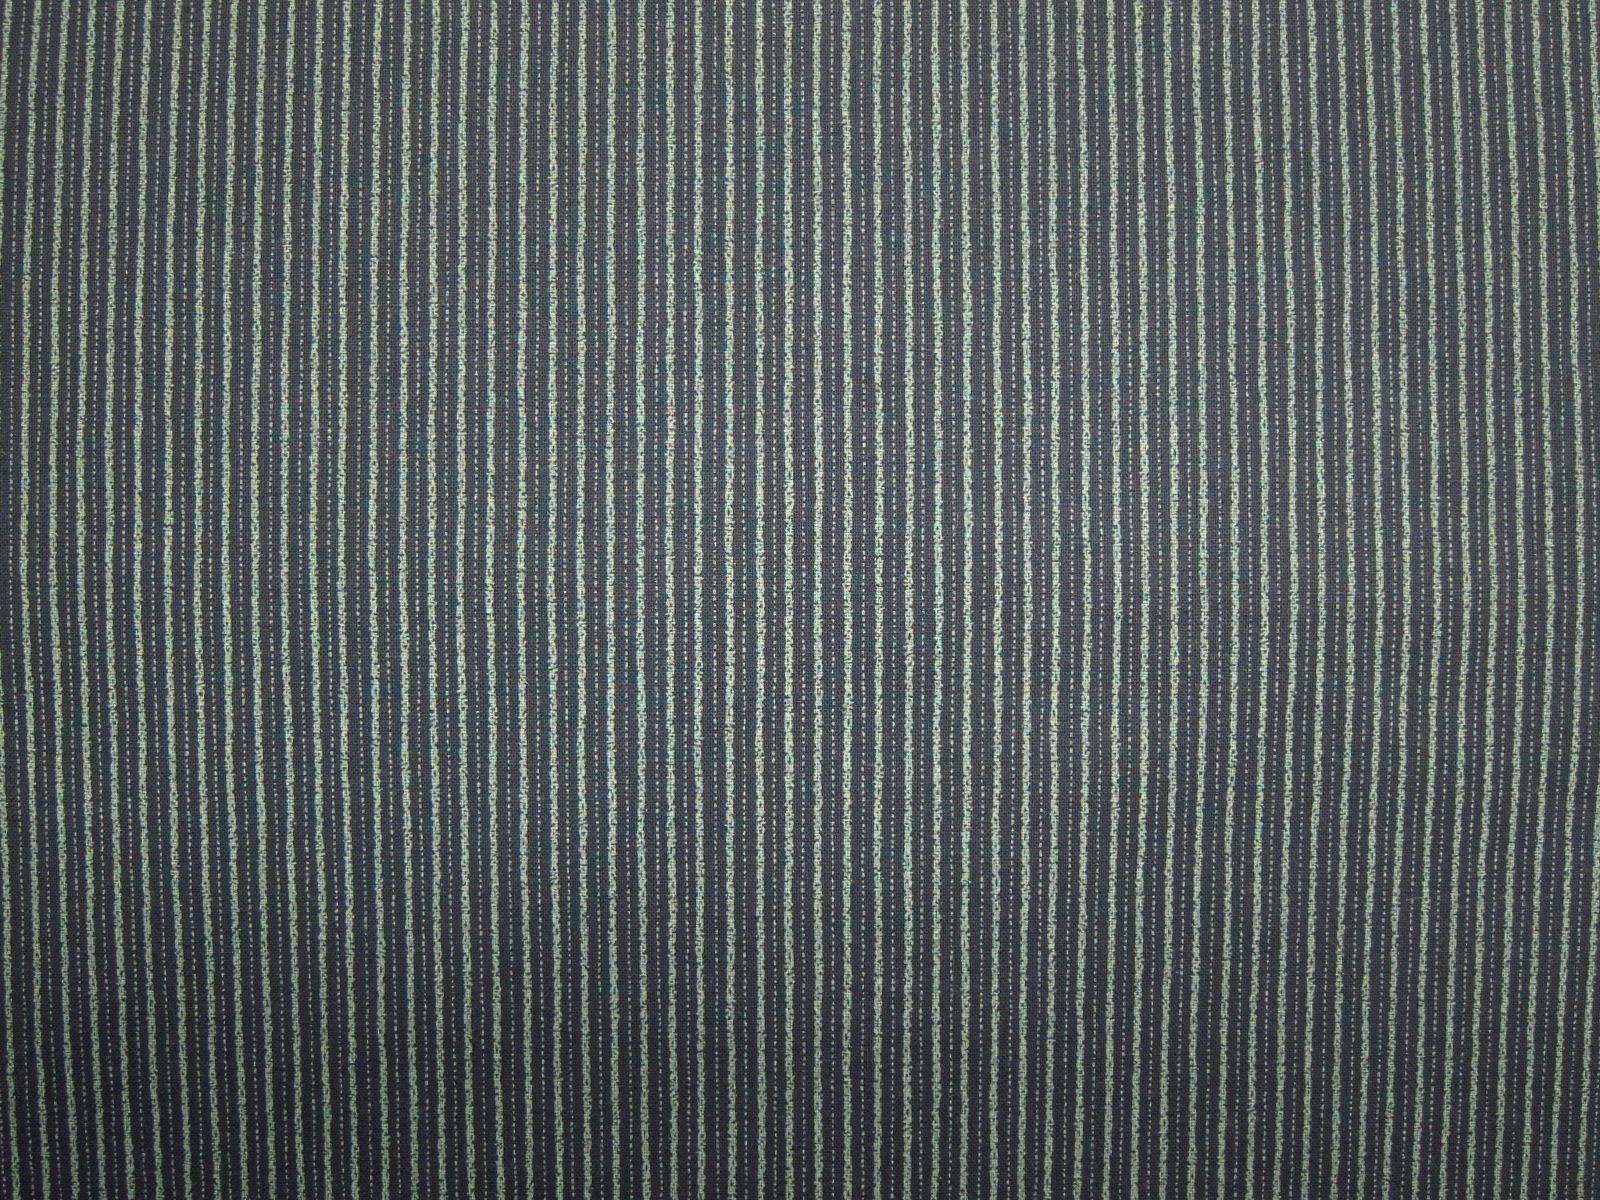 日本進口藍染風平織綿布-條紋花佃-深藍底、米黃底、酒紅底、黑底-100%純綿、日本製造